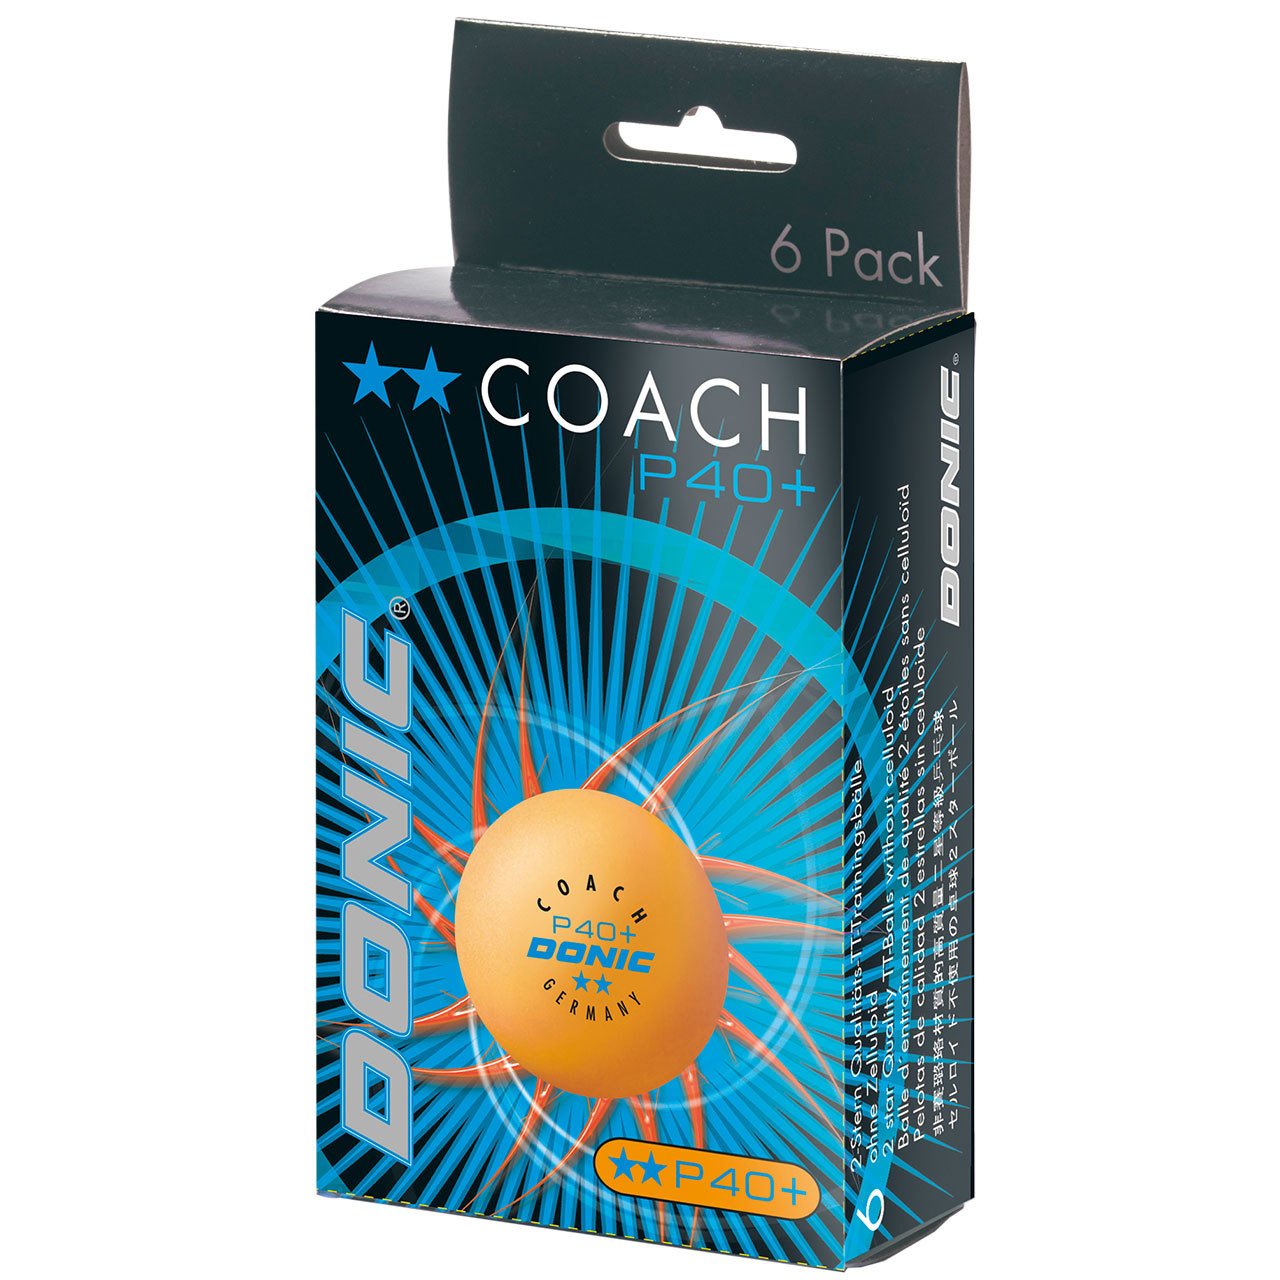 Stalo teniso kamuoliukai DONIC P40+ Coach 2 žv. 6vnt Oranžinės sp.